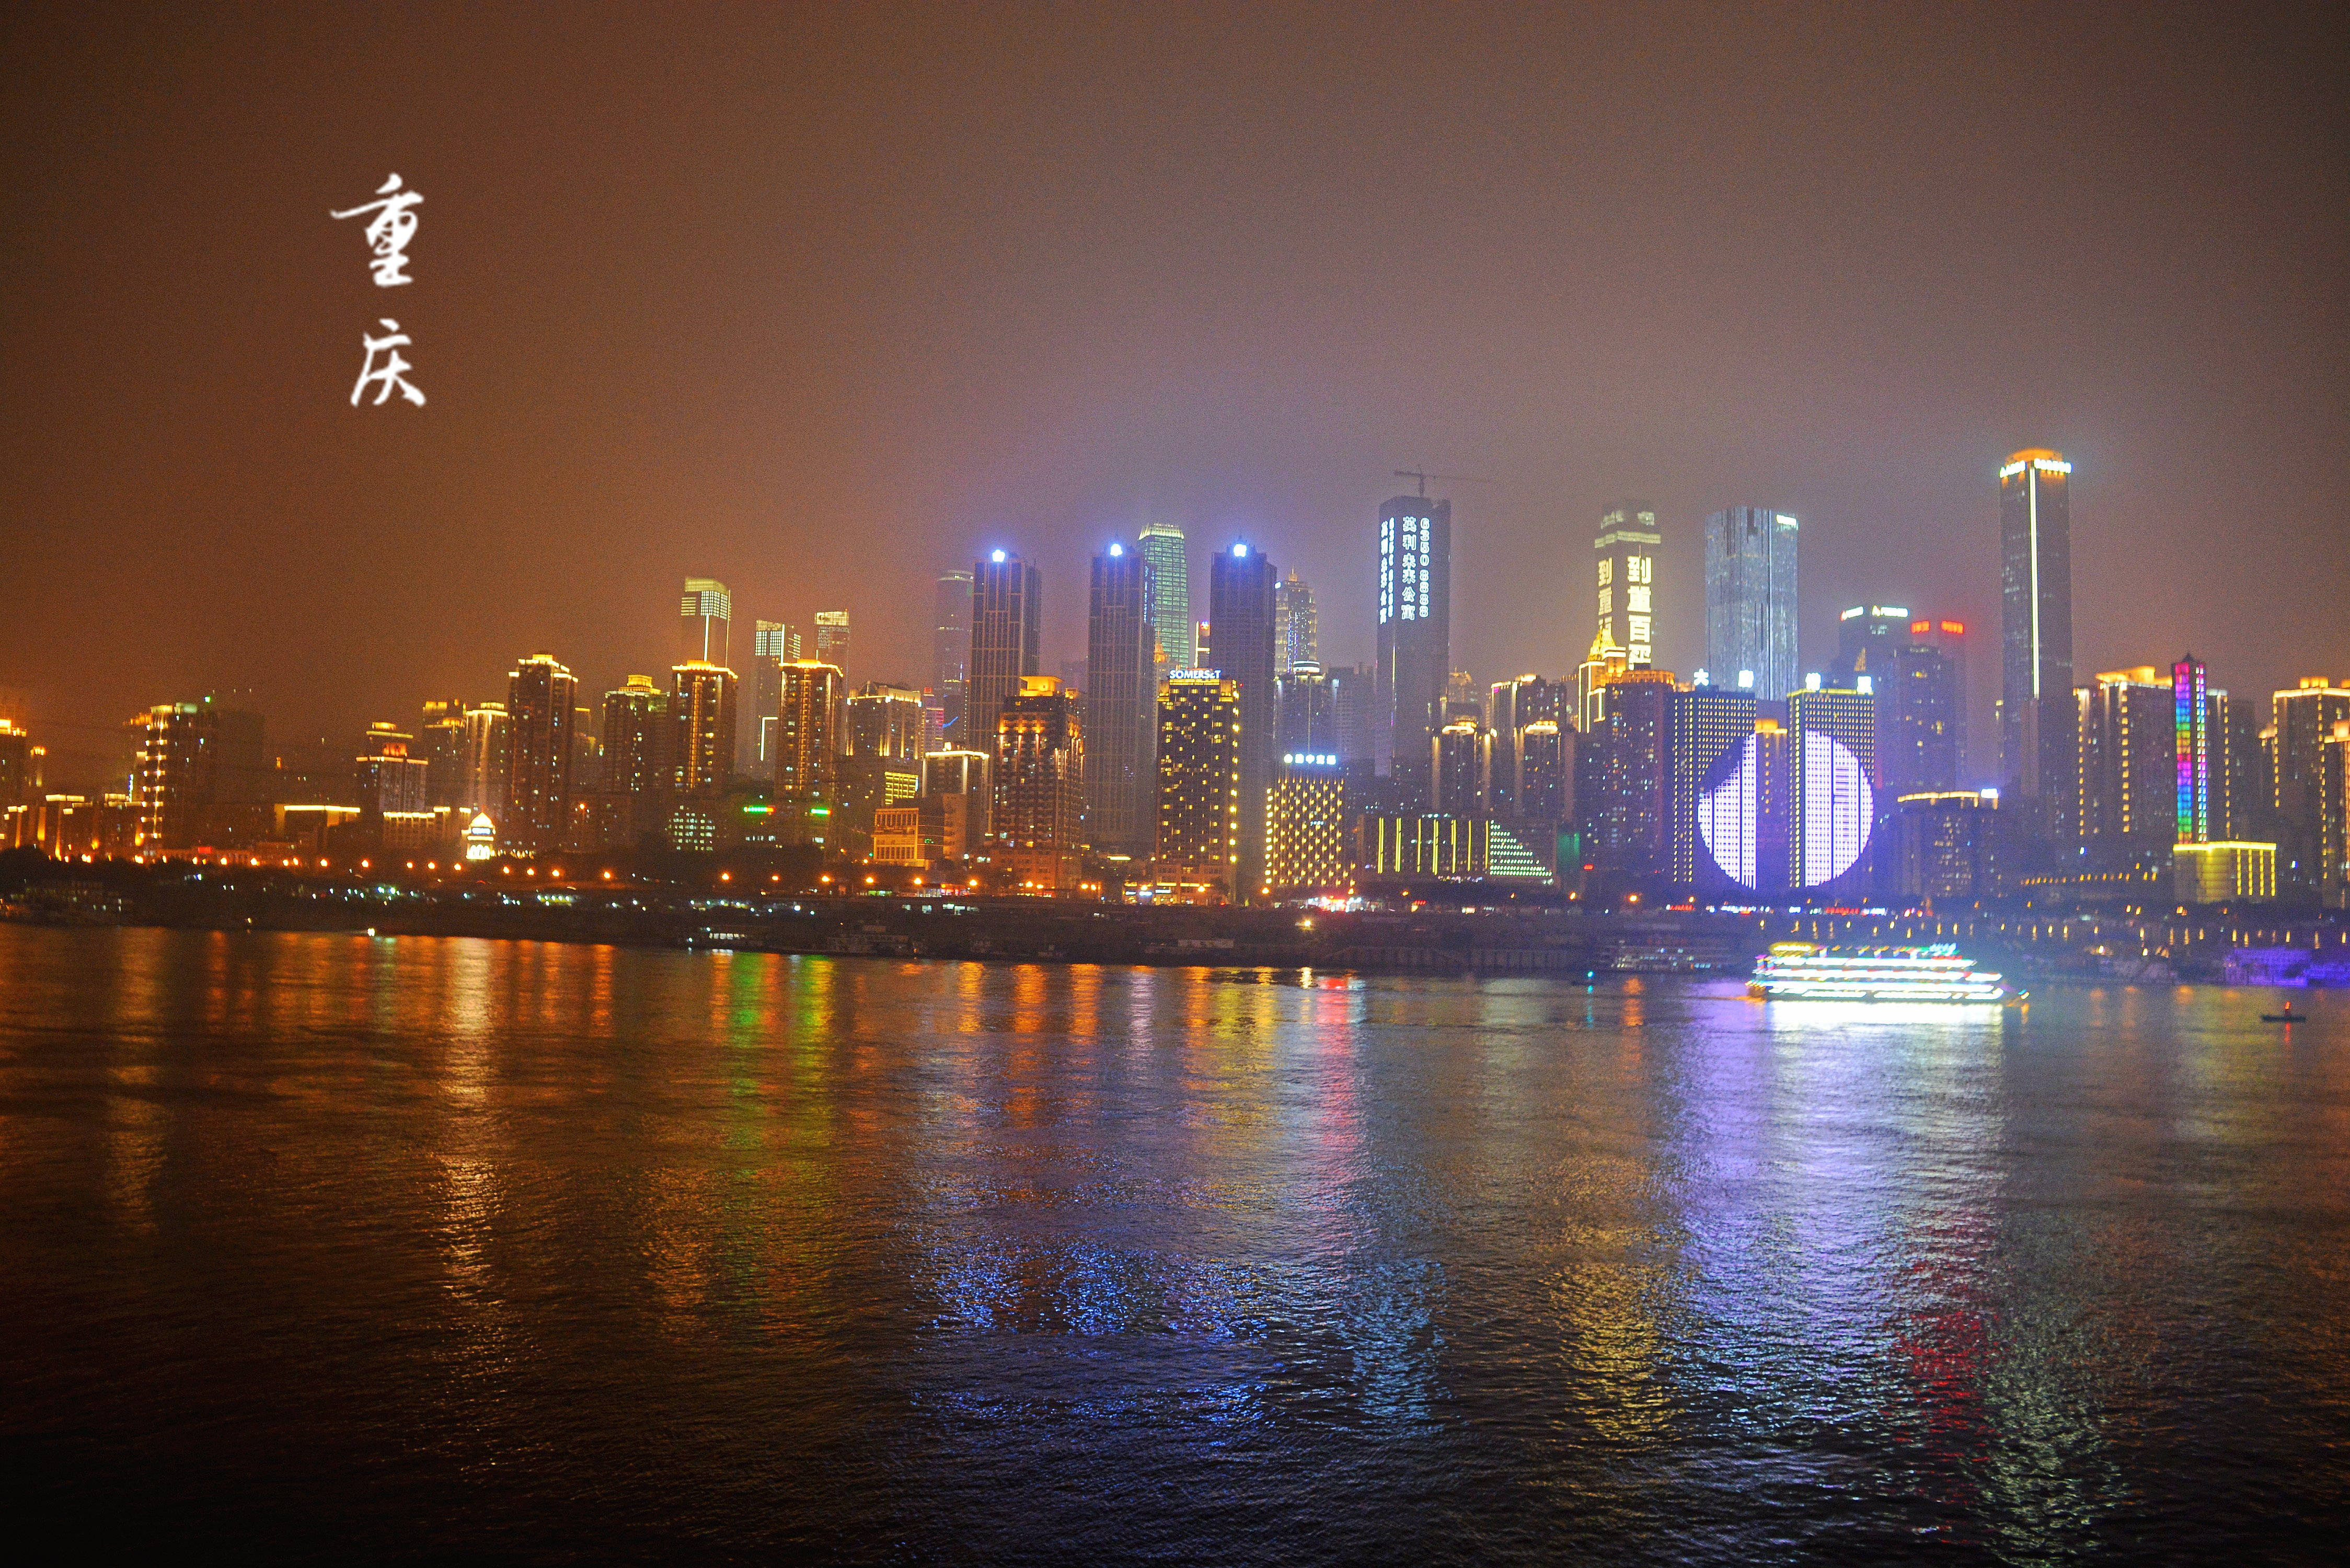 【携程攻略】重庆南滨路景点,重庆南滨路的夜景真是一级棒，眺望长江对面的渝中半岛，高楼和灯光组…